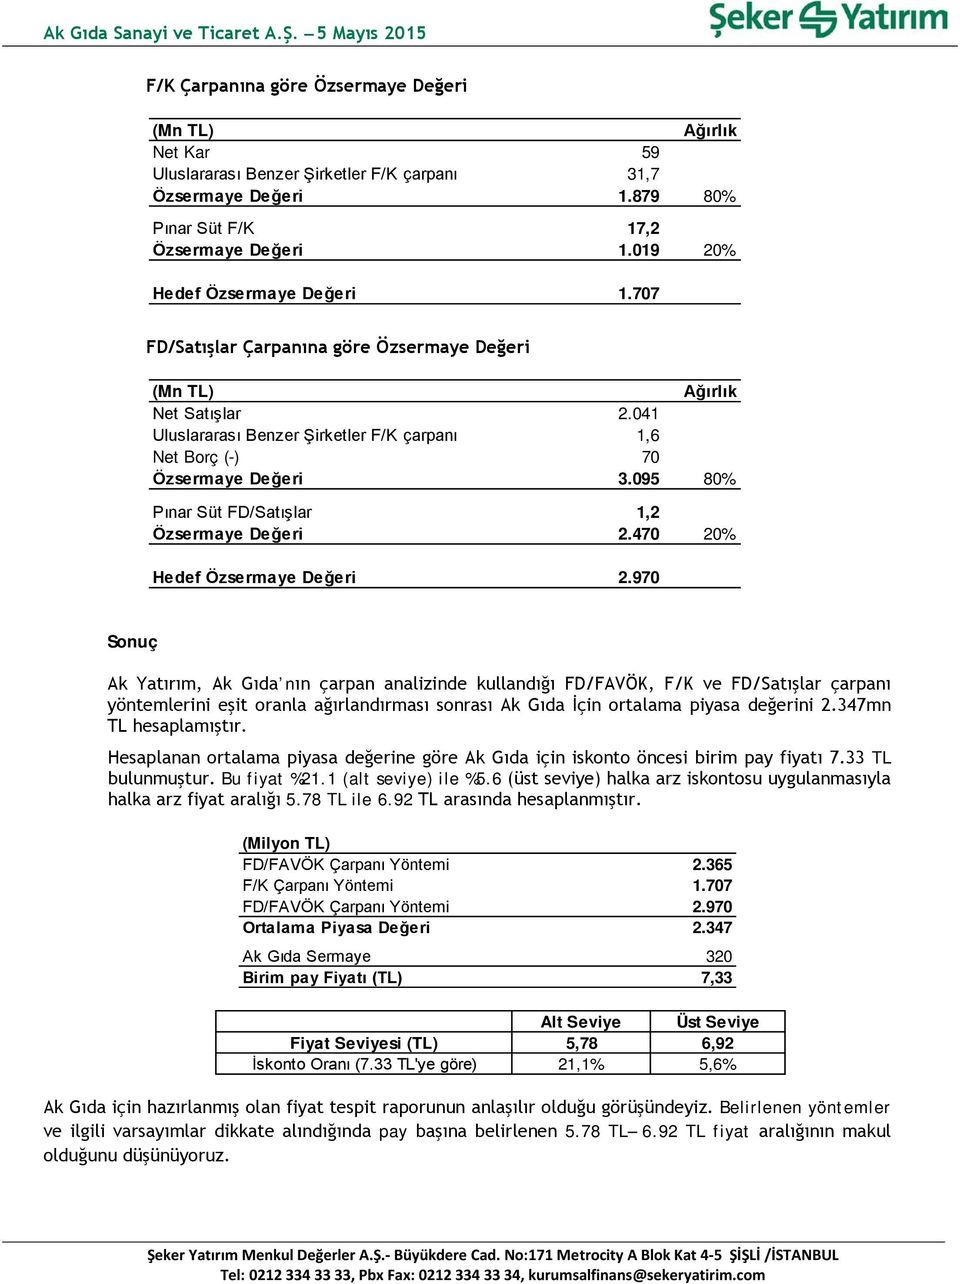 095 80% Pınar Süt FD/Satışlar 1,2 Özsermaye Değeri 2.470 20% Hedef Özsermaye Değeri 2.